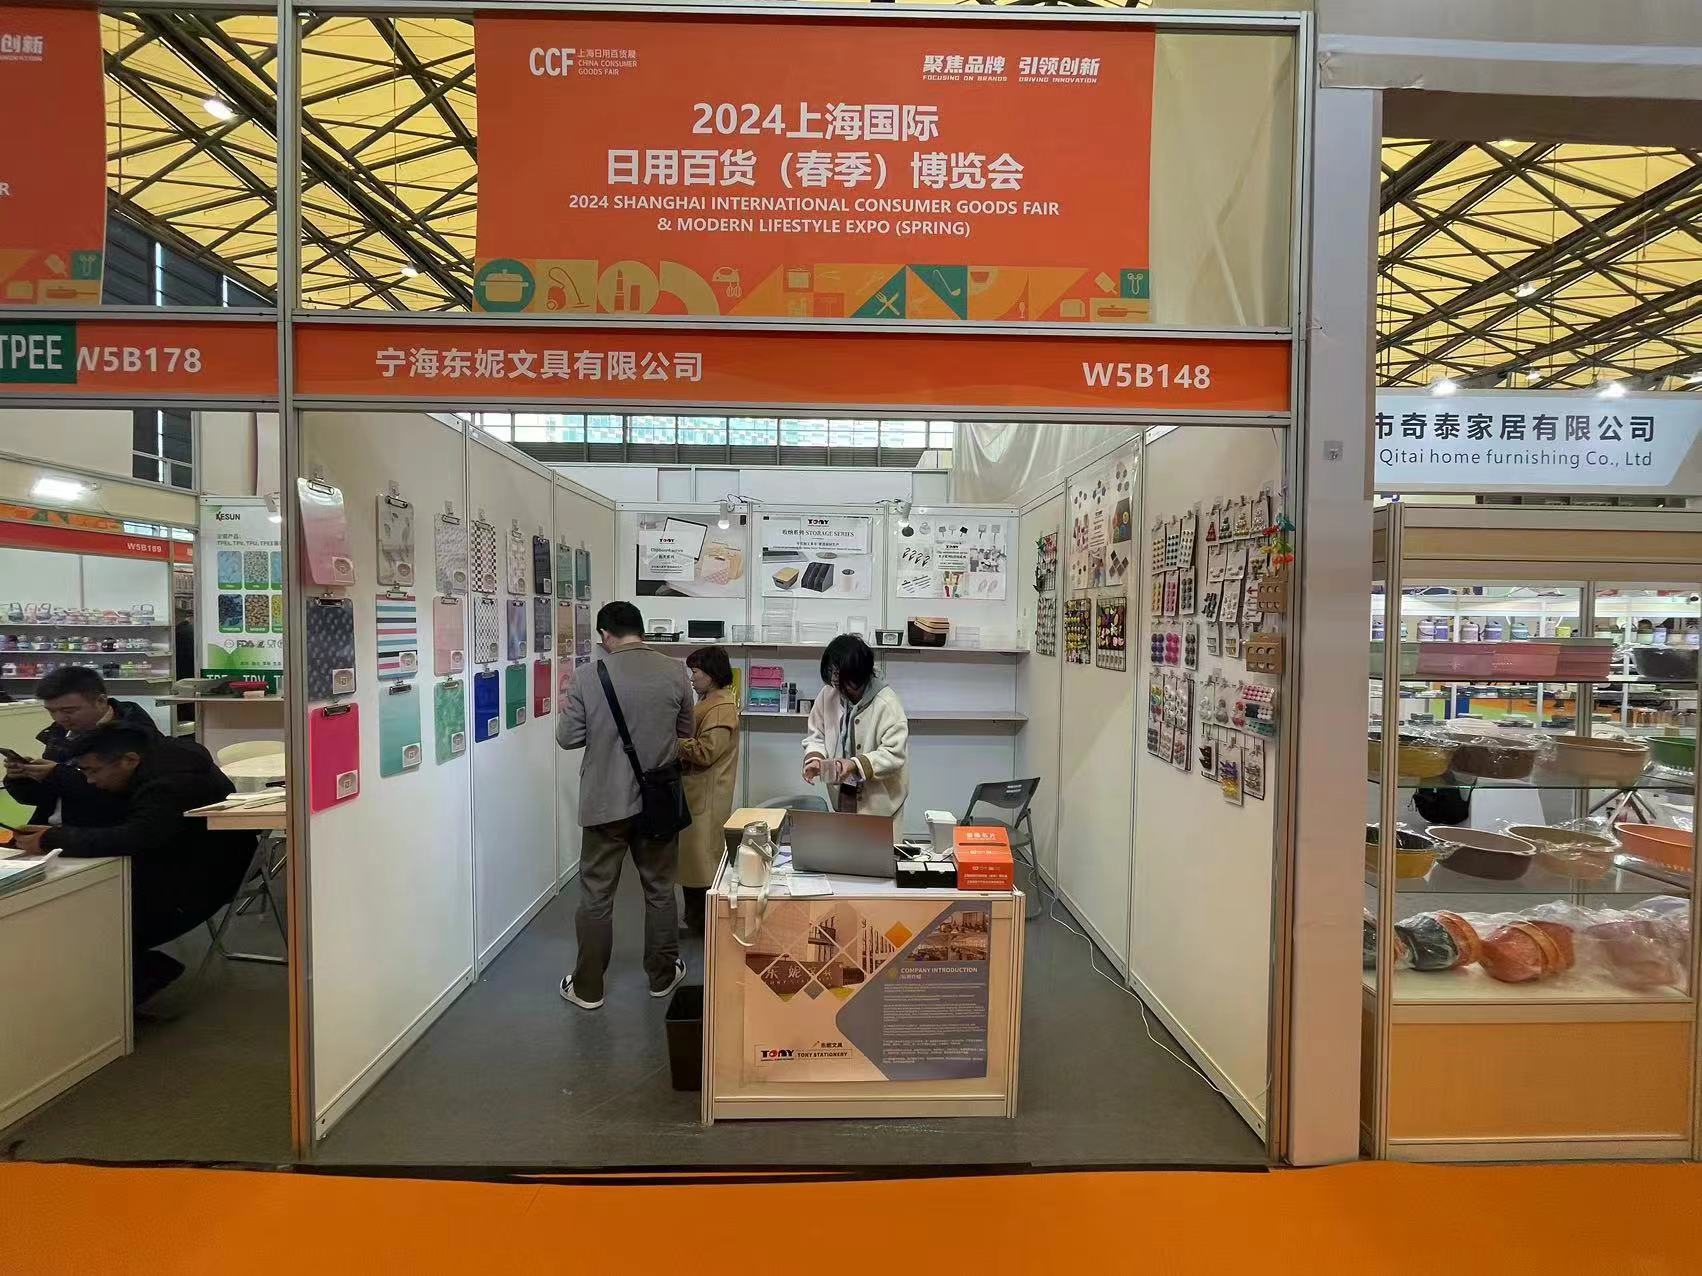 Tony Papelería expone en la Feria Internacional de Bienes de Consumo de Shanghai 2024